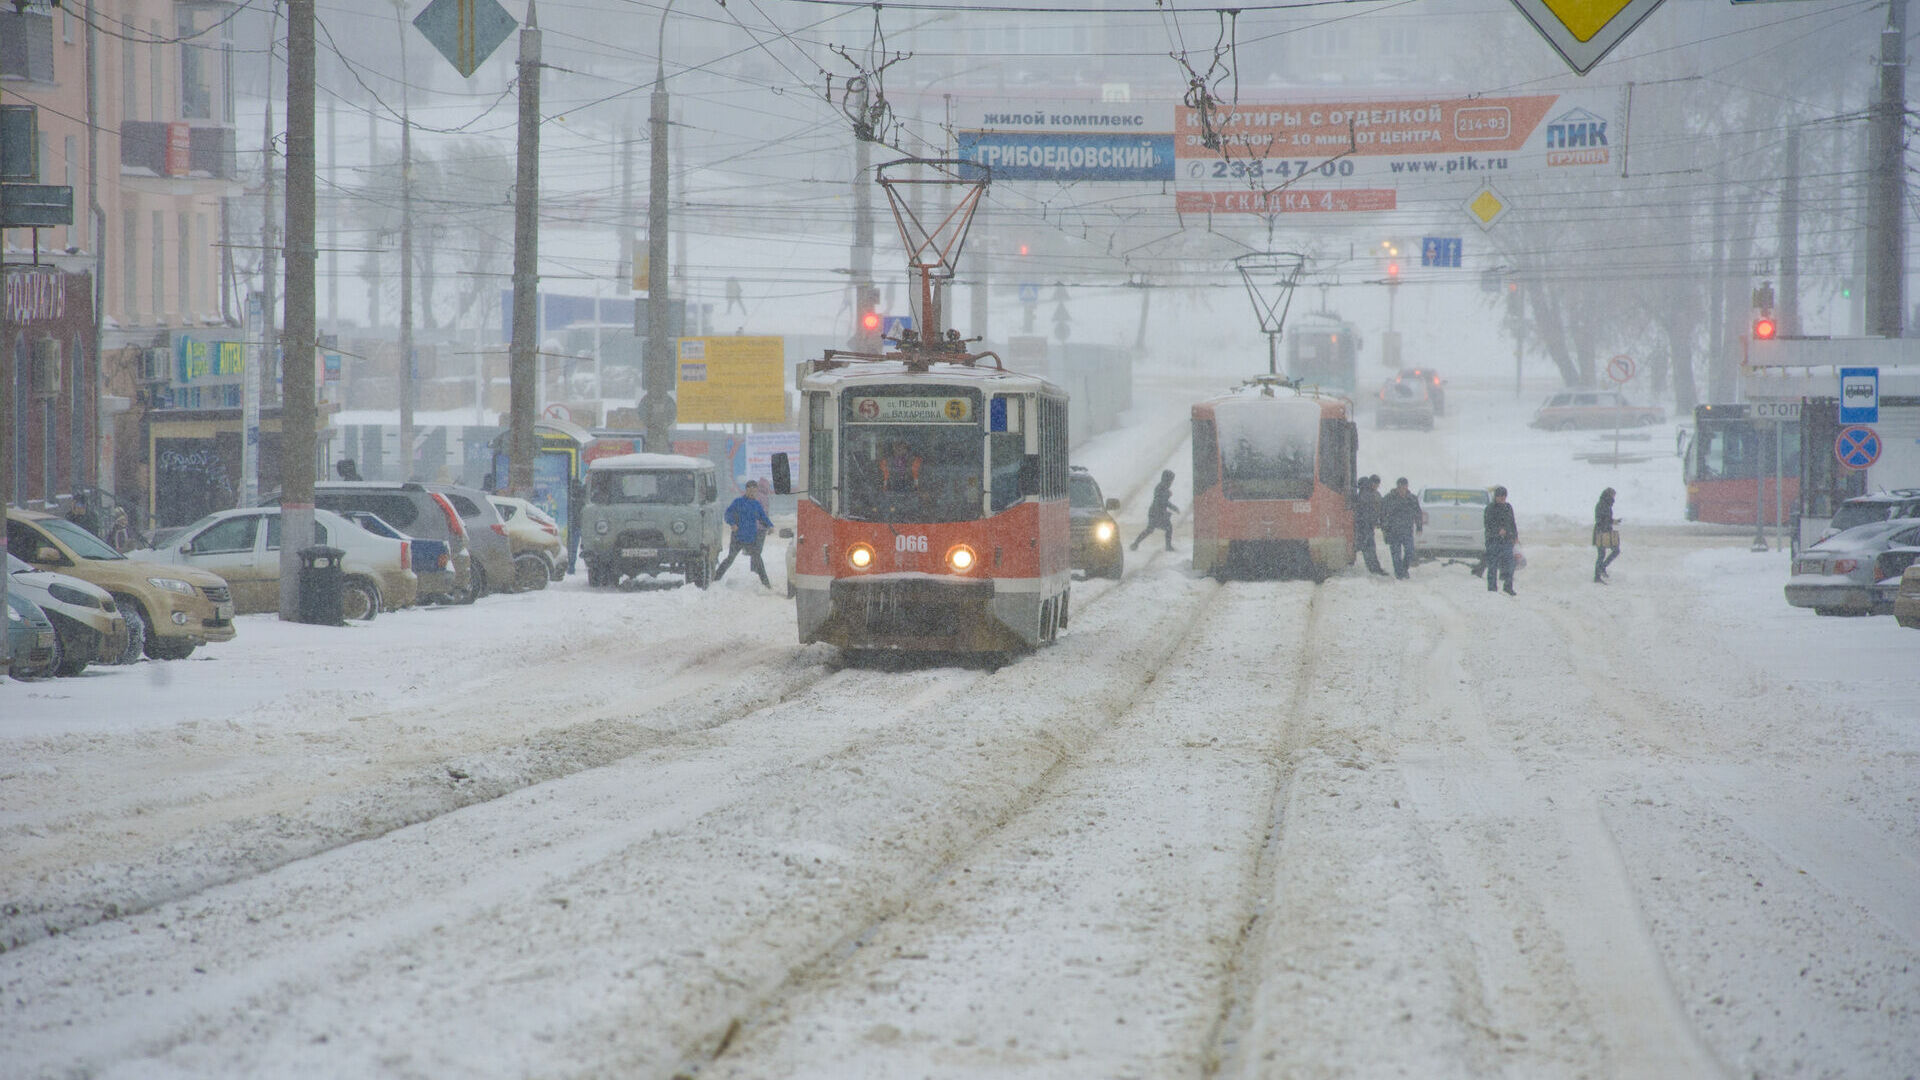 Потерявший управление трамвай в Перми боднул два автобуса